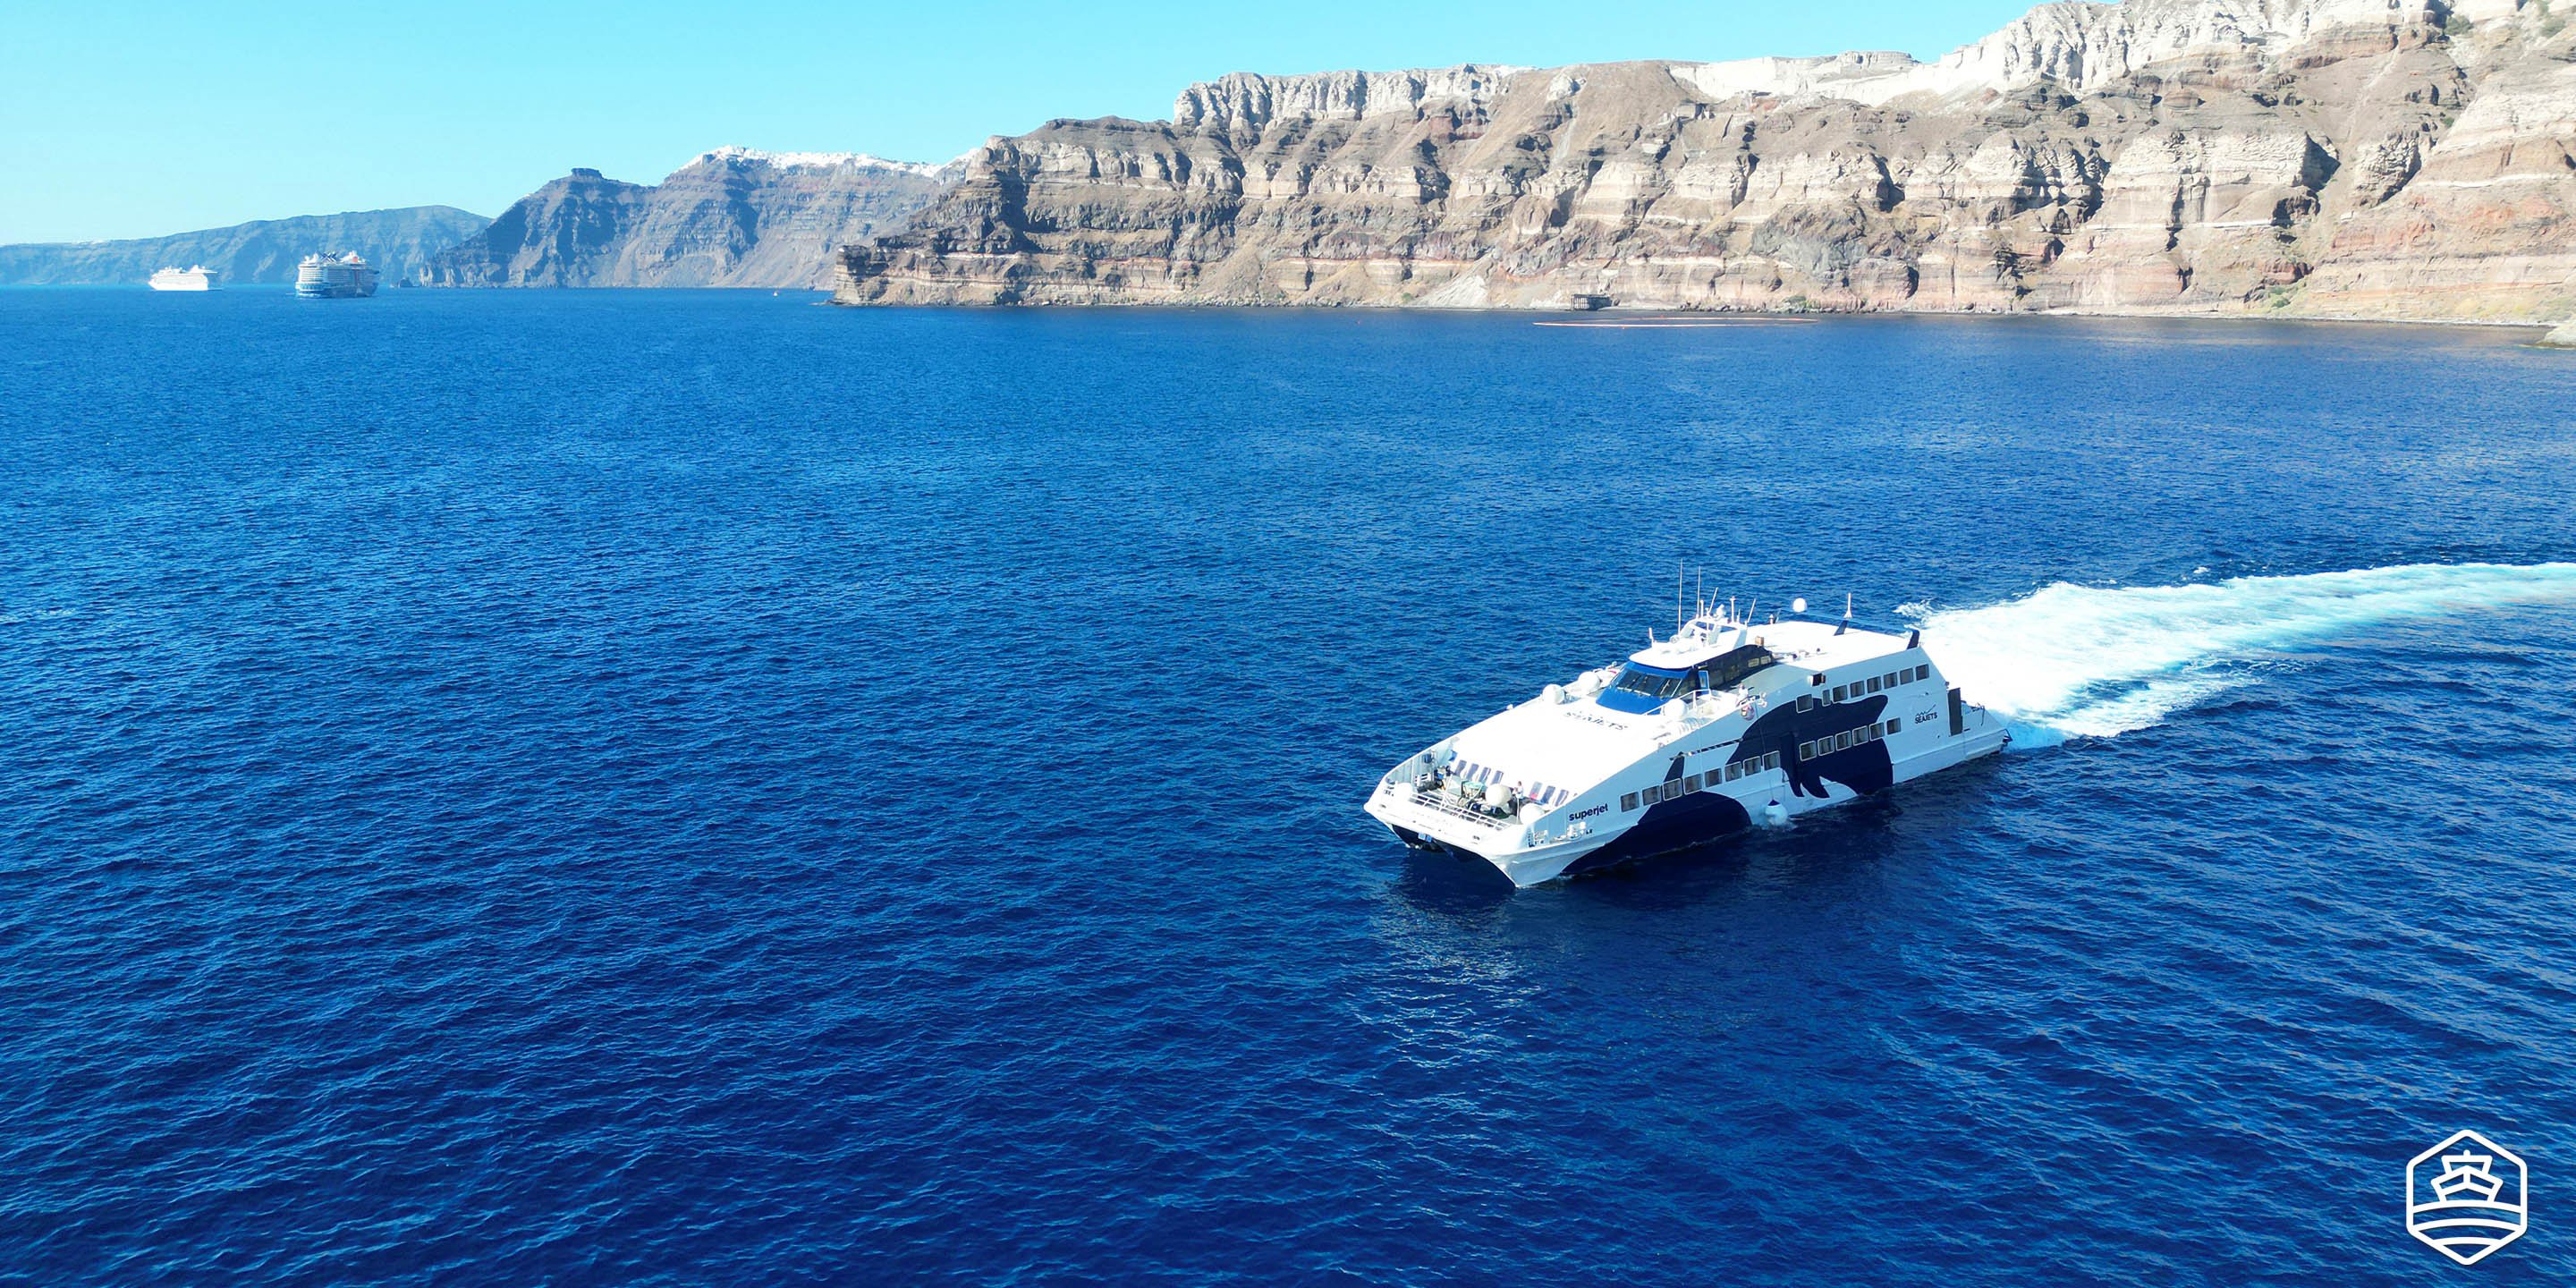 Le ferry à grande vitesse Super Jet de Seajets quitte le port d'Athinios à Santorin pour Naxos